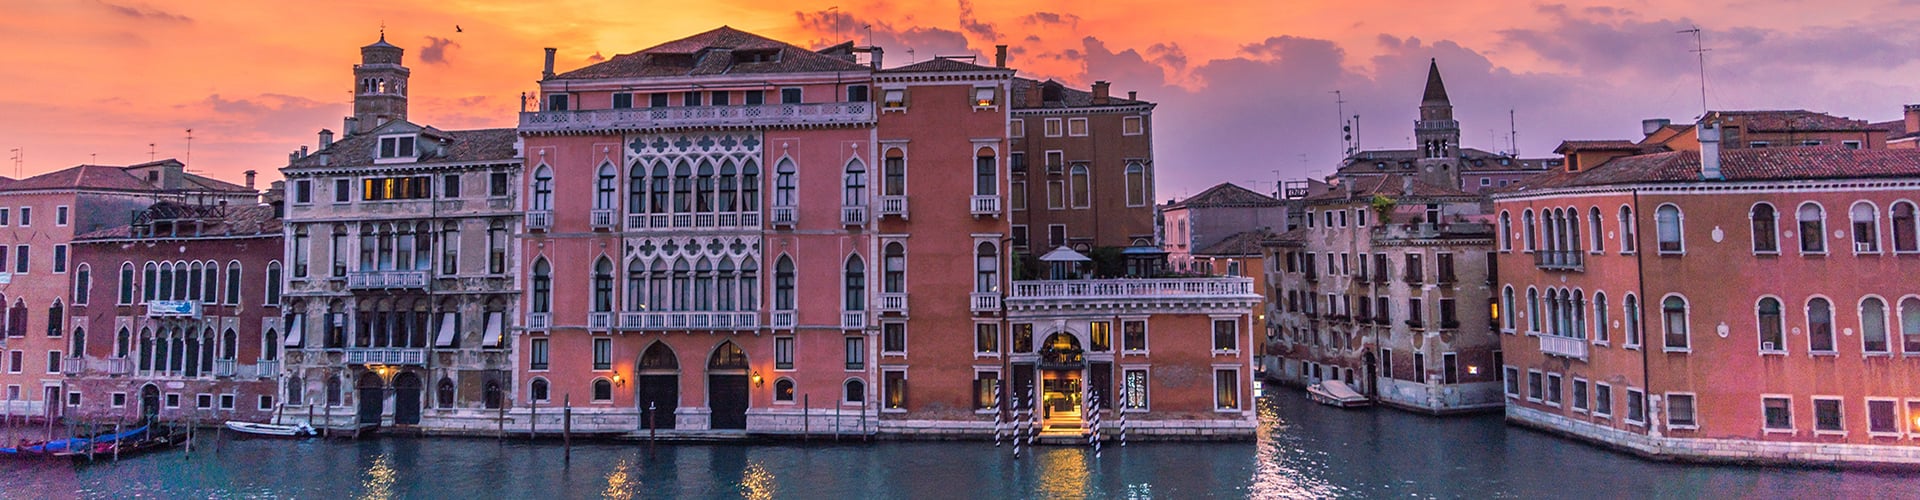 Best Restaurants in Venice Italy